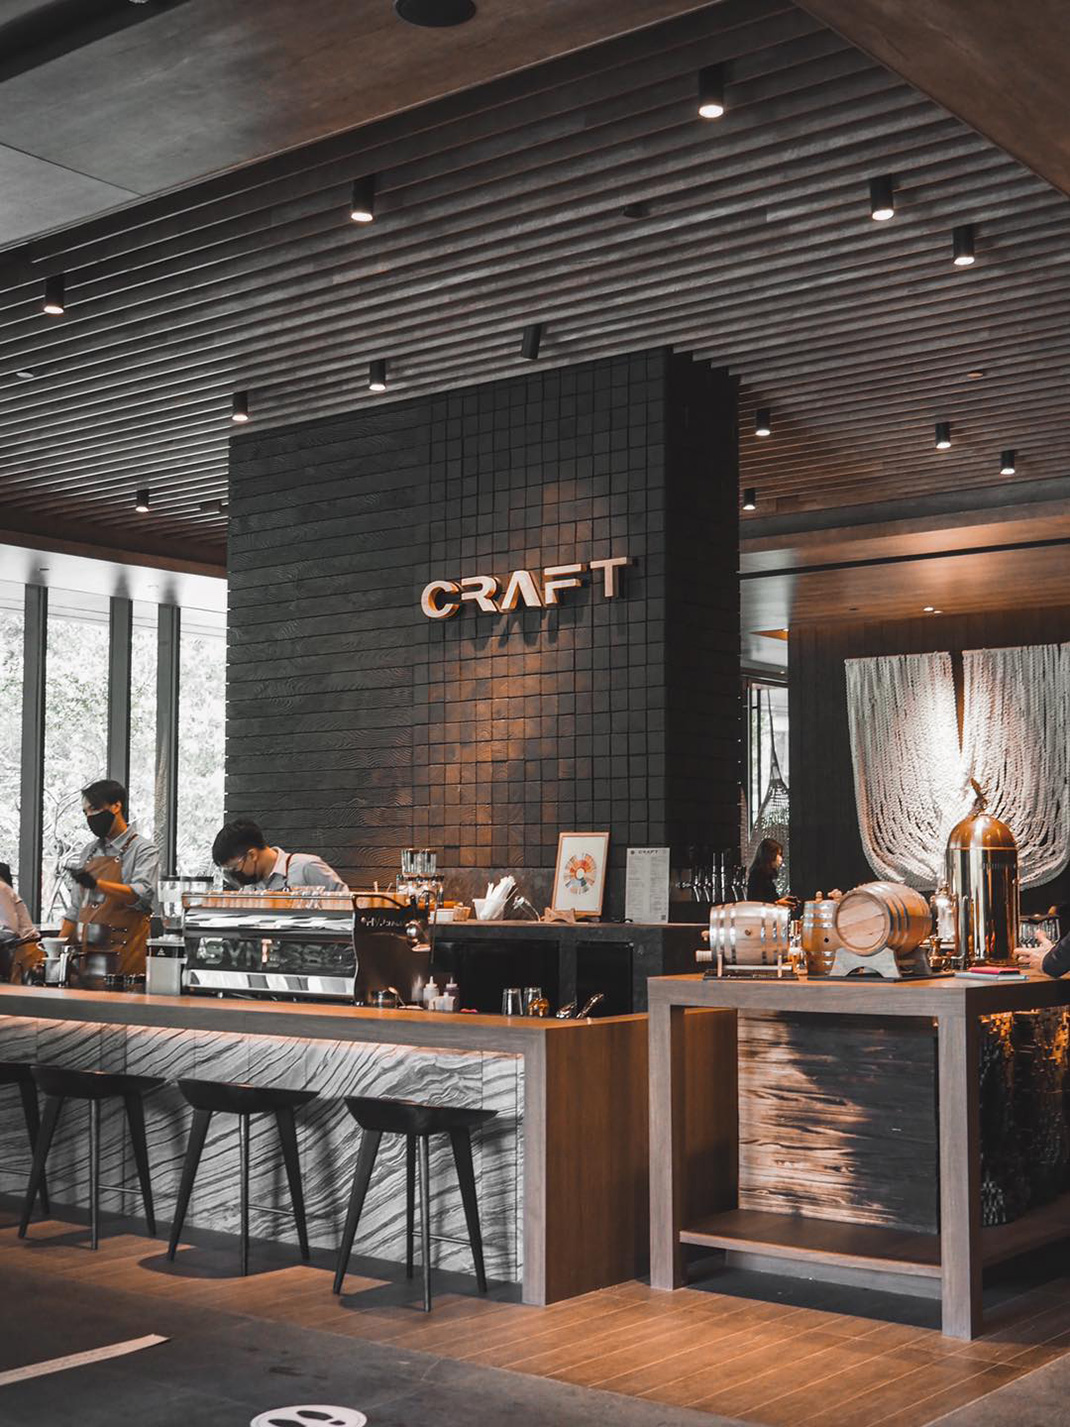 曼谷金普顿·马来莱的Craft Cafe酒吧 泰国 曼谷 酒吧 咖啡店 cafe  logo设计 vi设计 空间设计 视觉餐饮